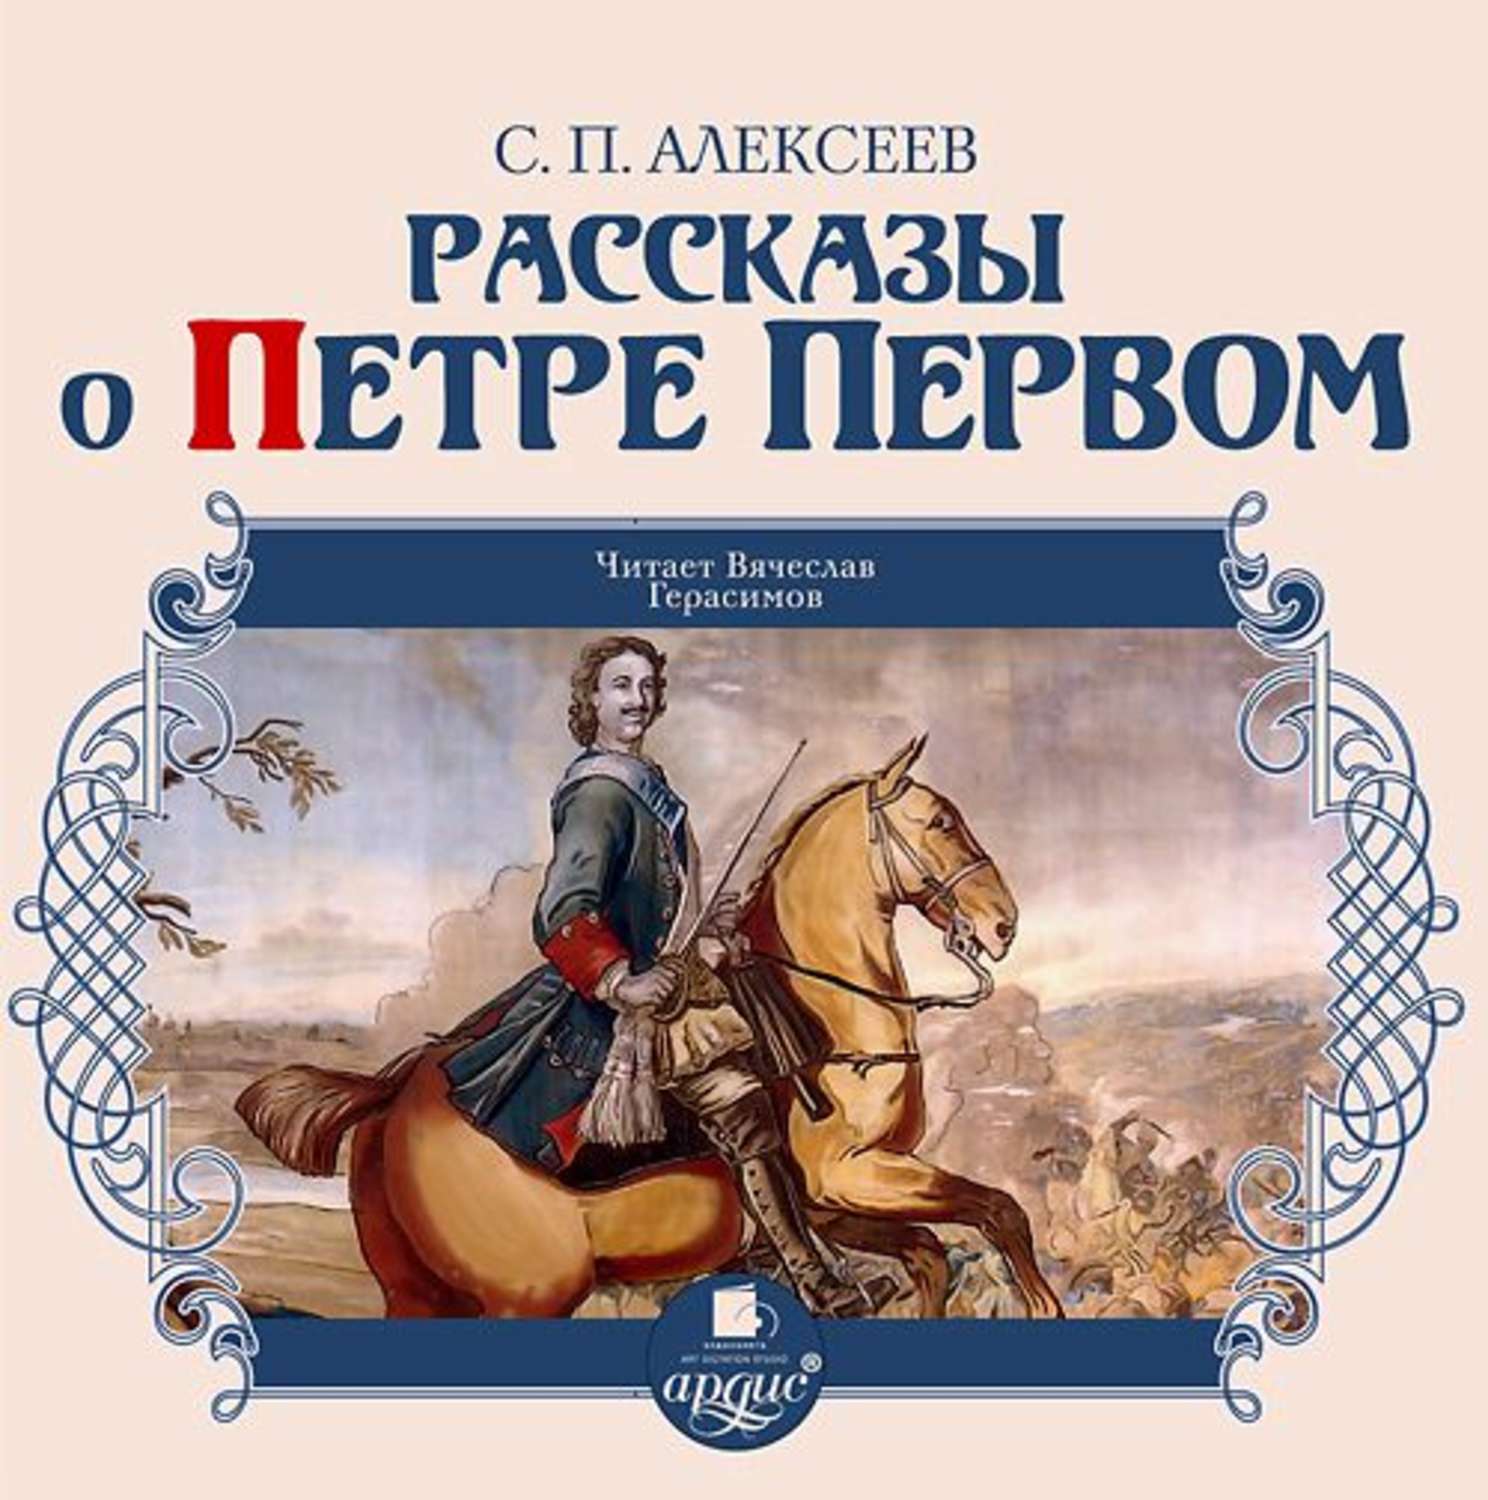 Детей 1 аудиокнига. Книги о Петре первом Алексеева для детей.